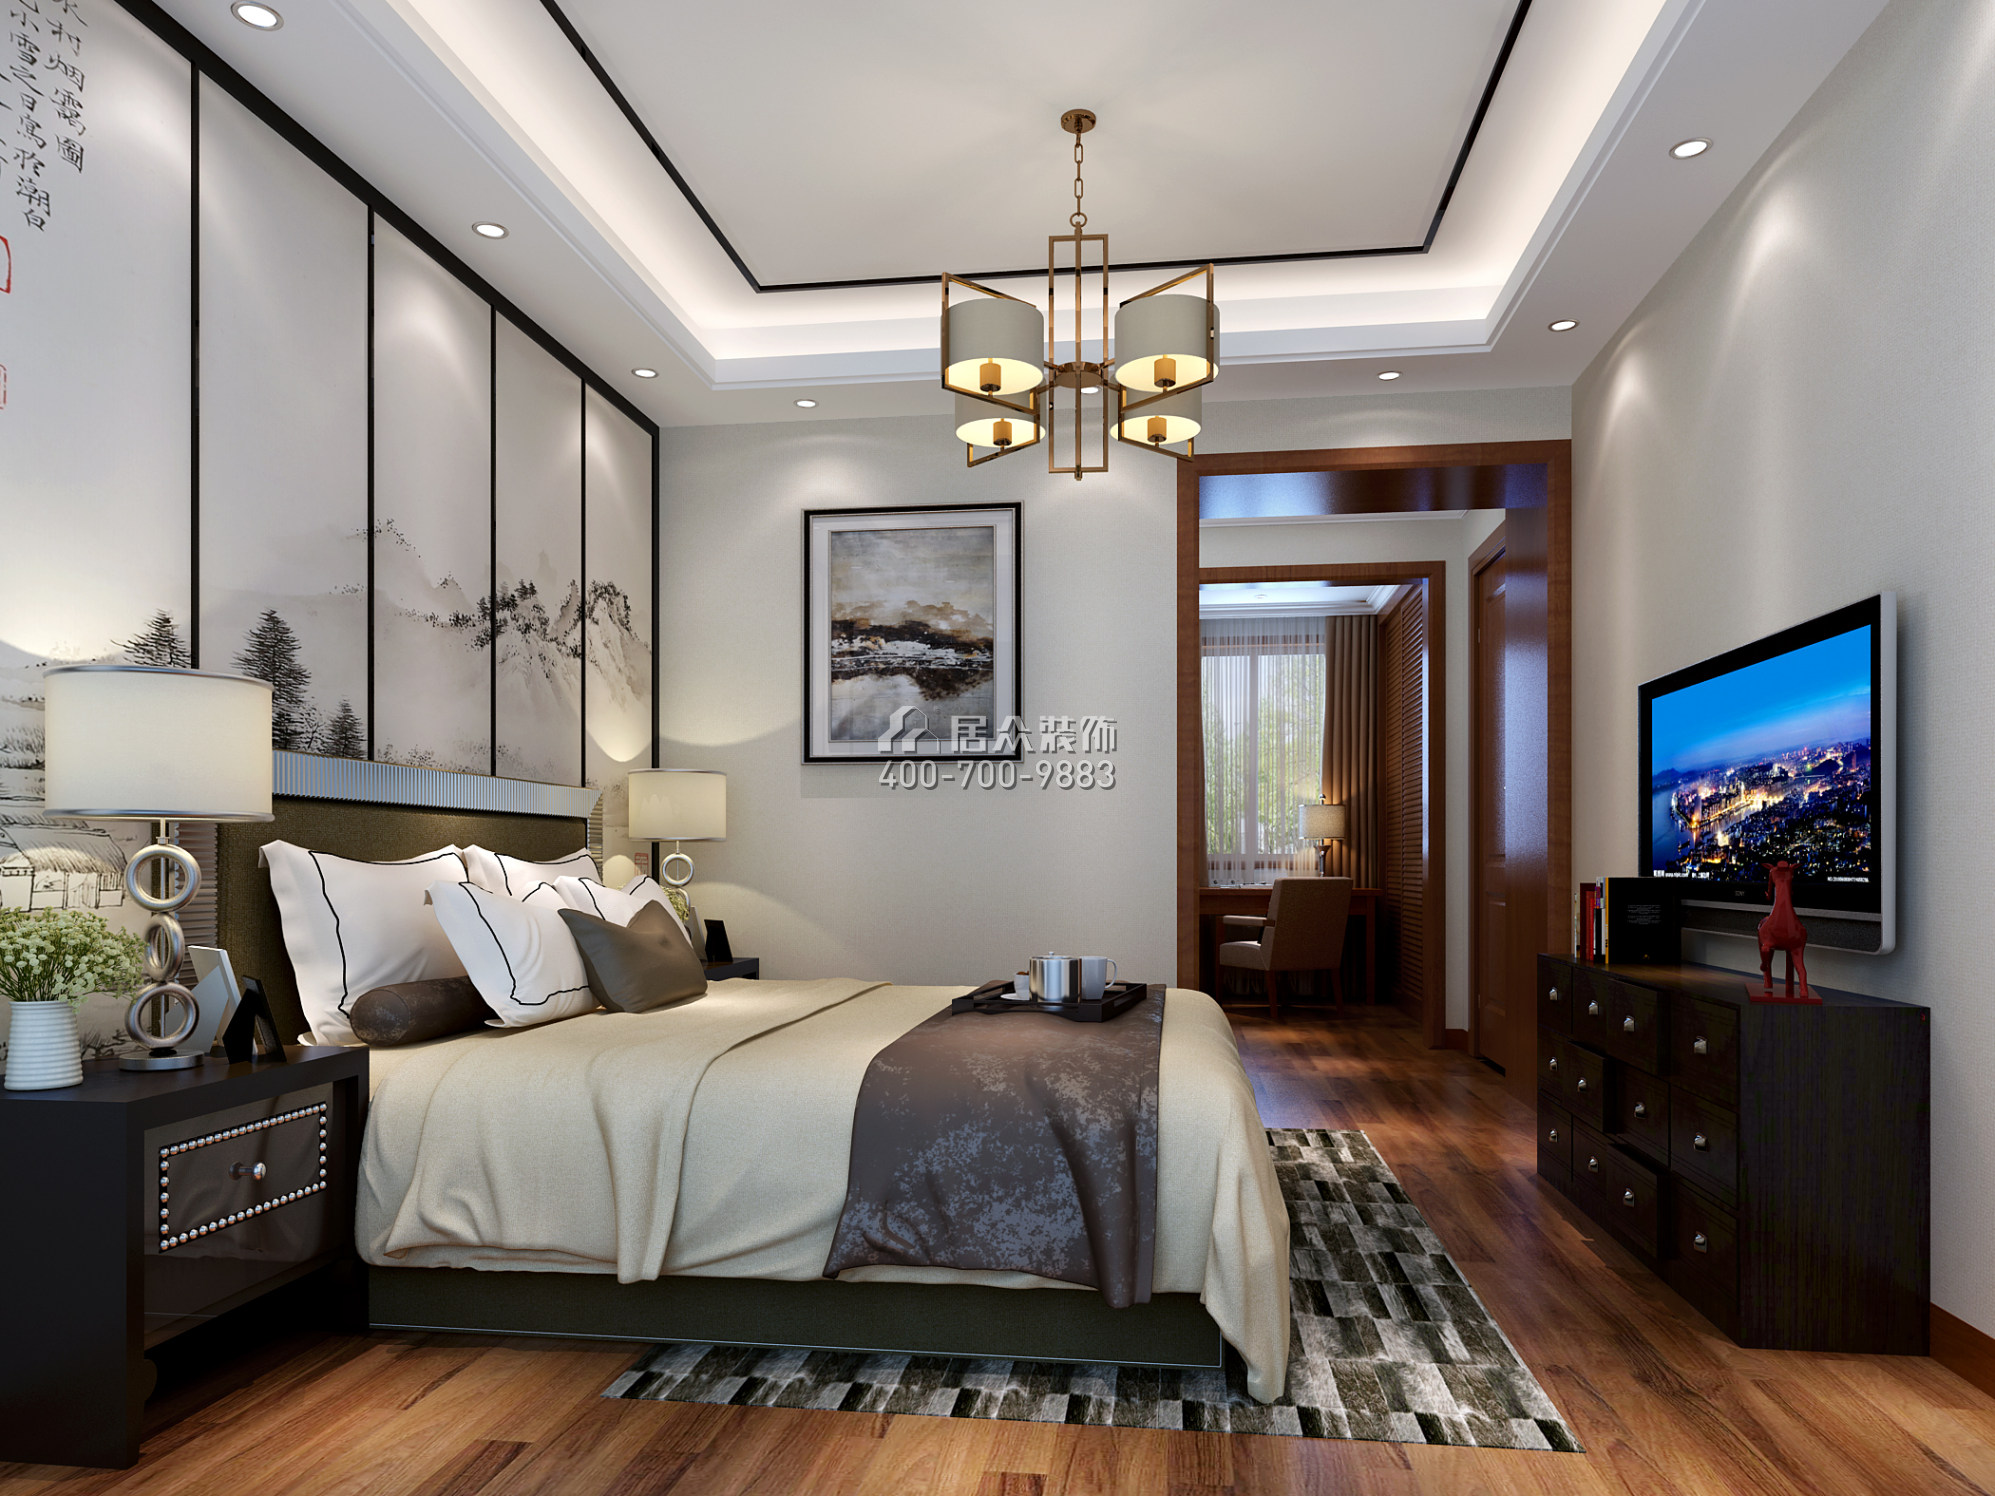 同和悦园139平方米中式风格平层户型卧室装修效果图